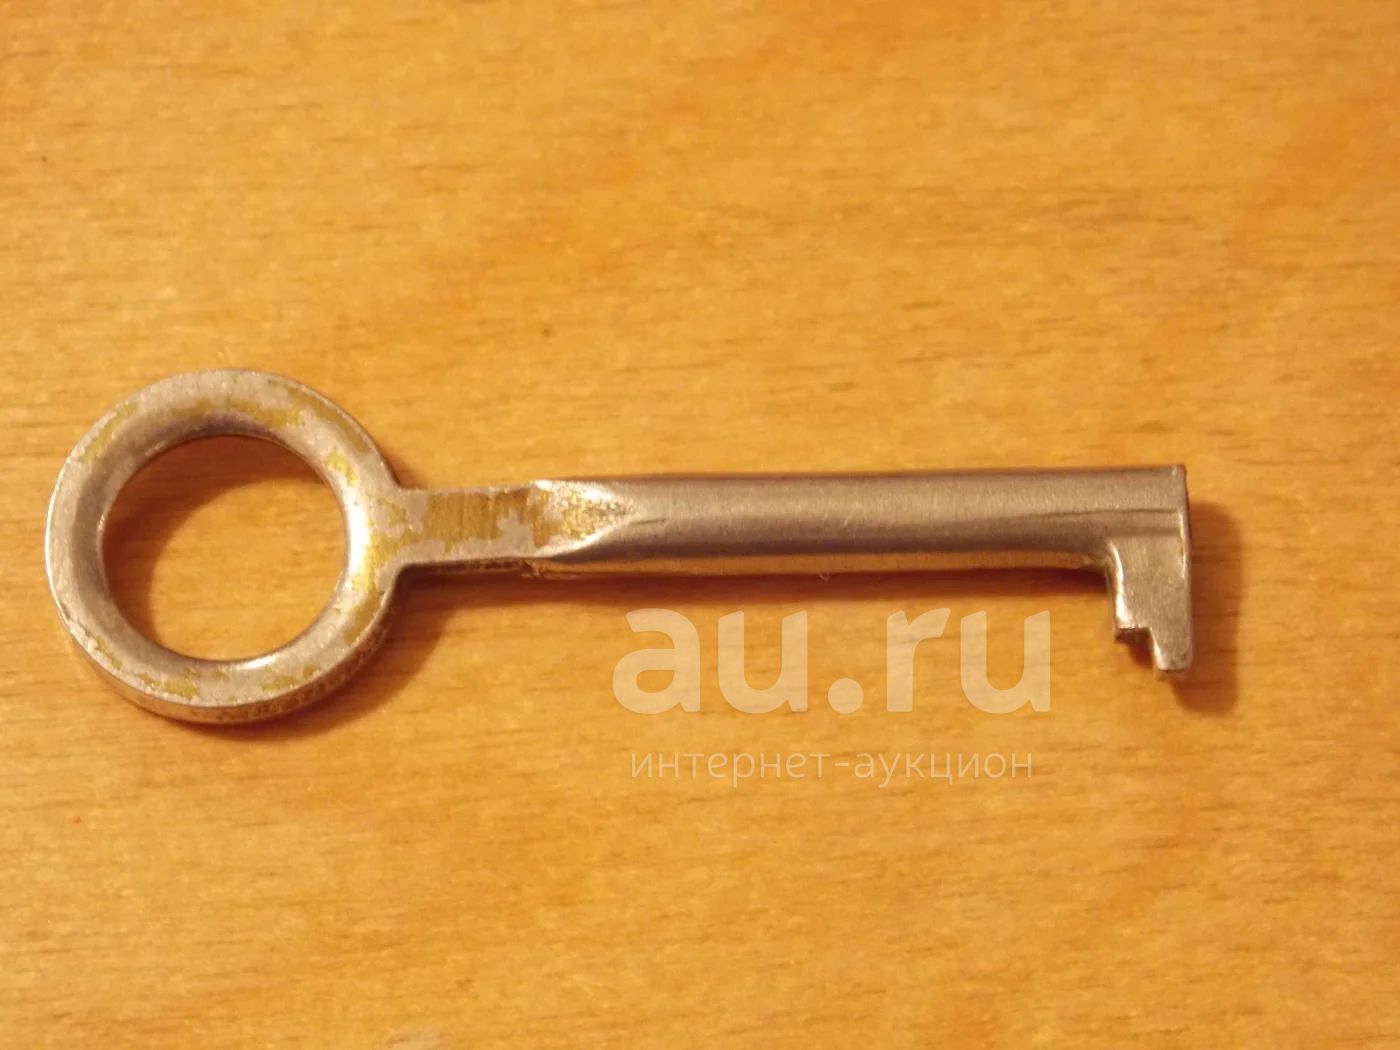 Ключ старого образца. Советский шкаф с ключом. Ключ от советского шкафа. Старинный ключ от шкафа. Старинные ключи для шкафов.